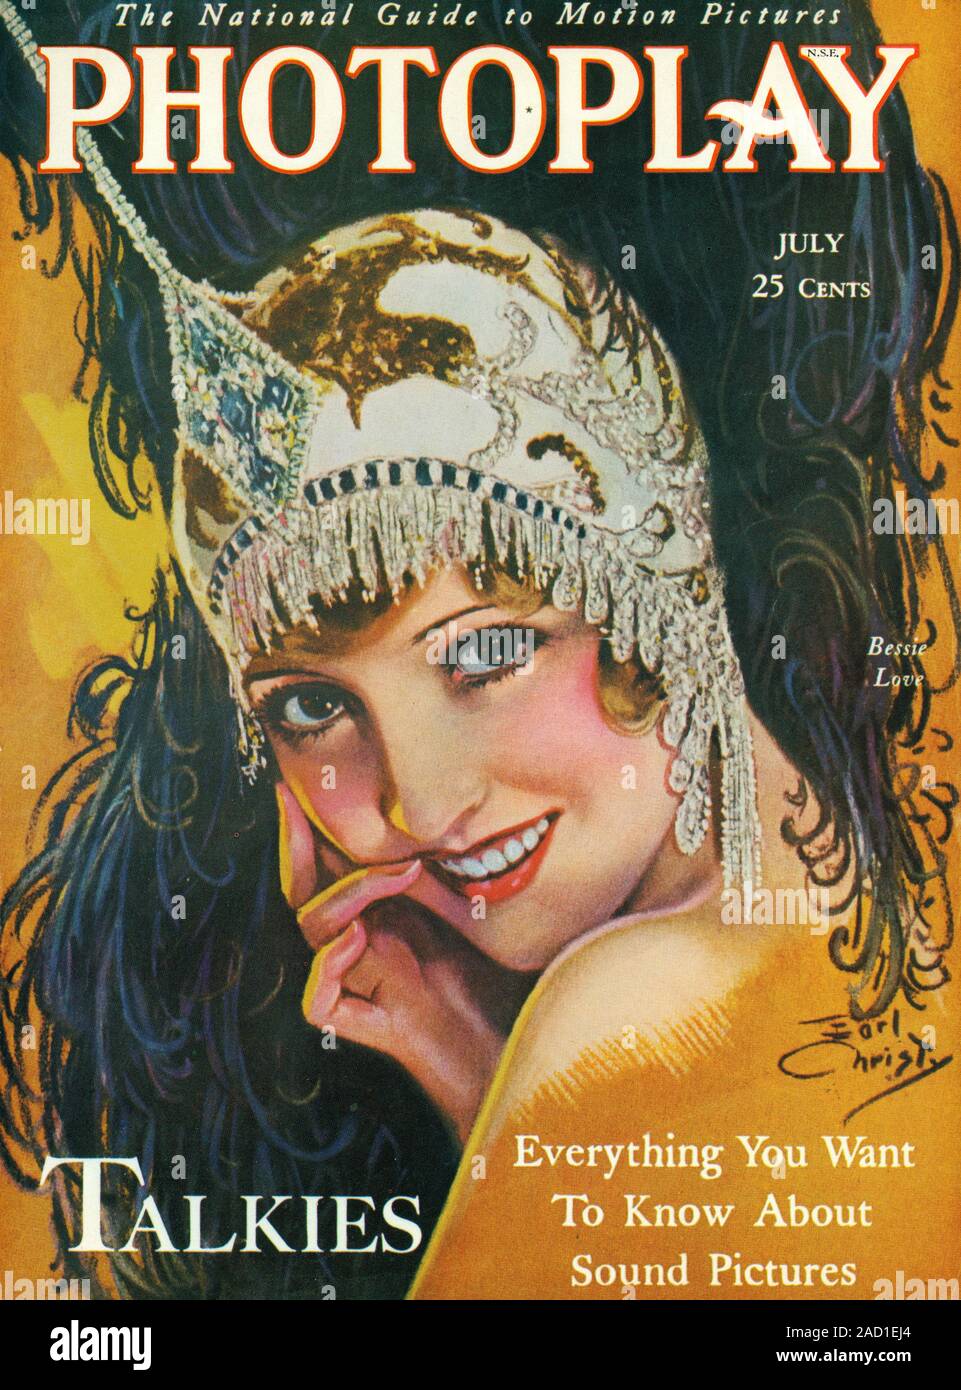 Bessie Love, Portrait publicitaire, couvrir de Photoplay Magazine, juillet 1929 Banque D'Images